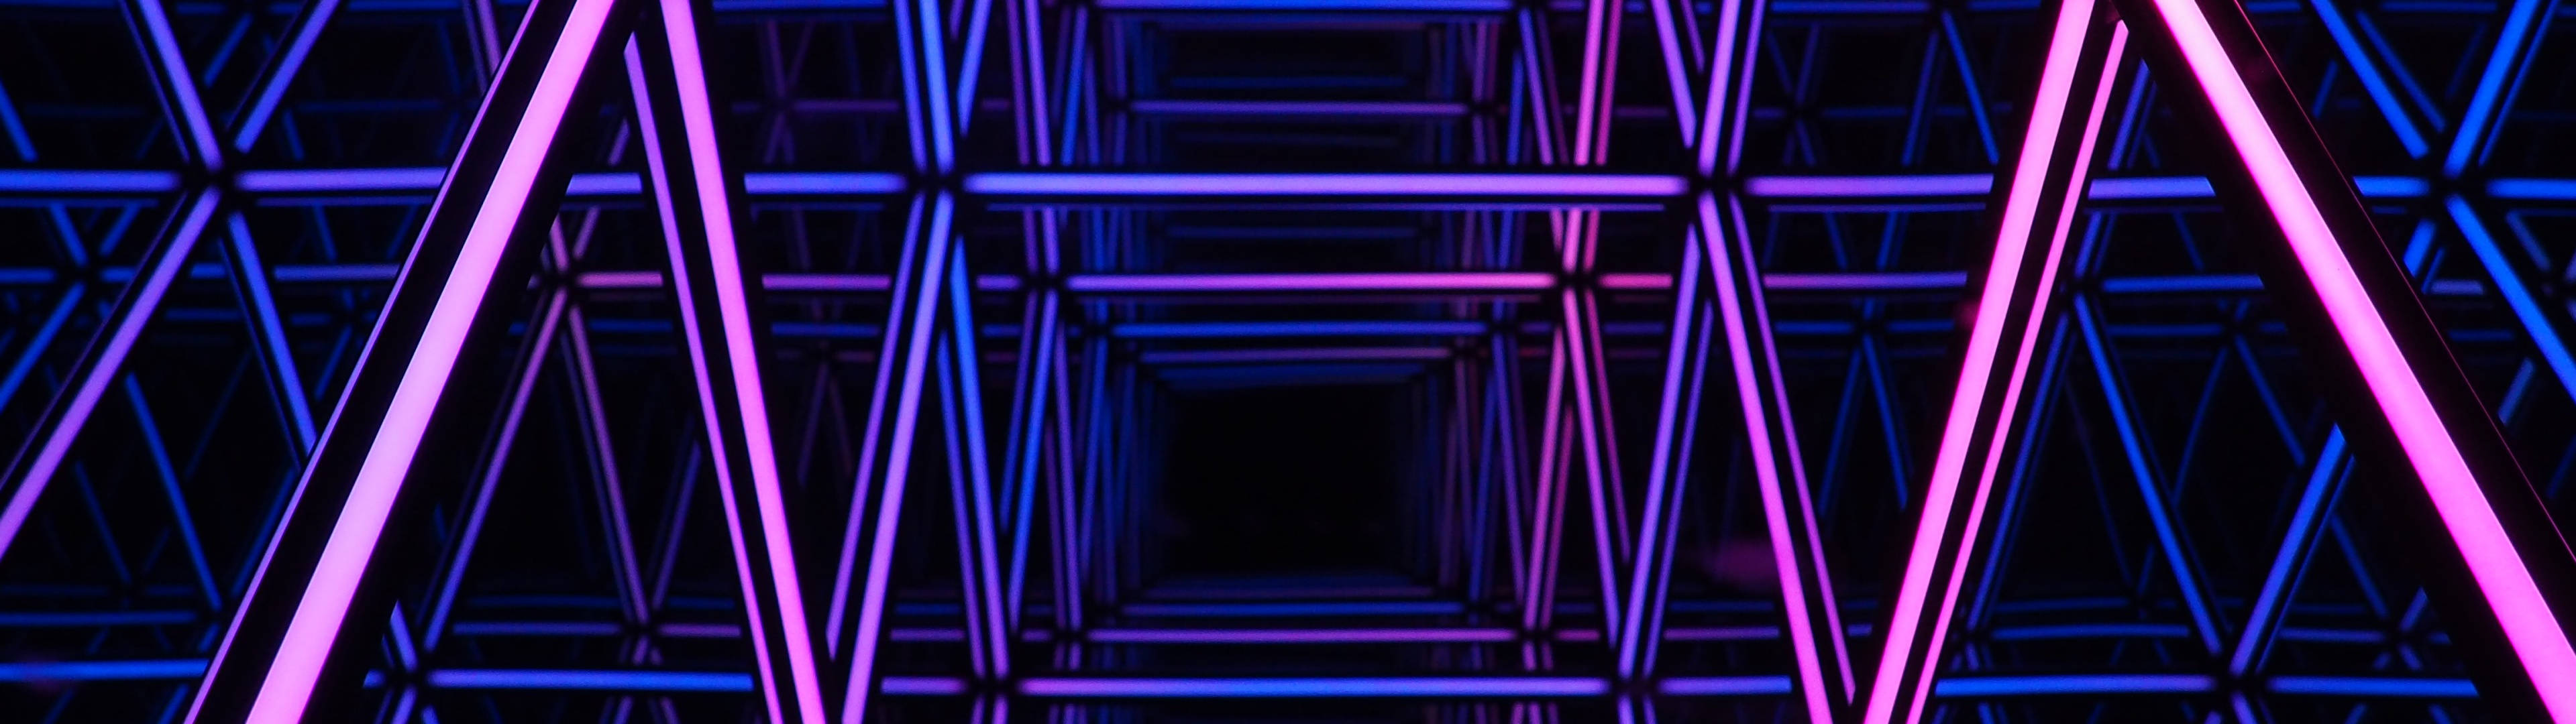 Dark Purple Bars 4d Ultra Hd Wallpaper